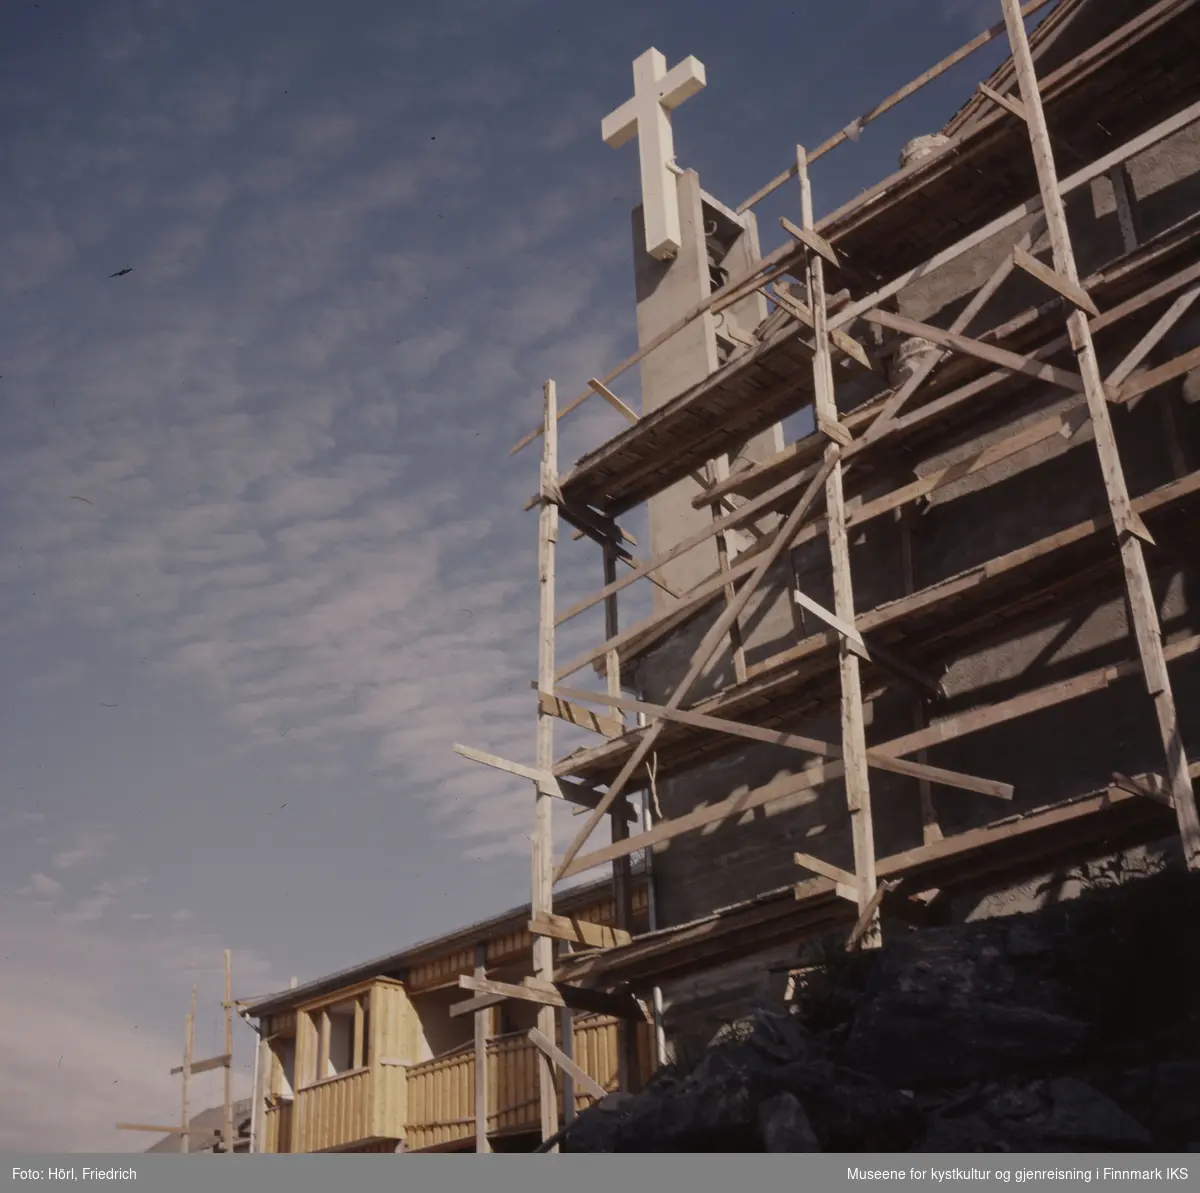 Den nye katolske kirke St. Mikael i Hammerfest bygges og nærmer seg ferdigstilling. I sidebygget er det ikke satt inn vinduer enda og stilas er fortsatt plassert inn mot veggene. Klokketårnet med korset står allerede ferdig.